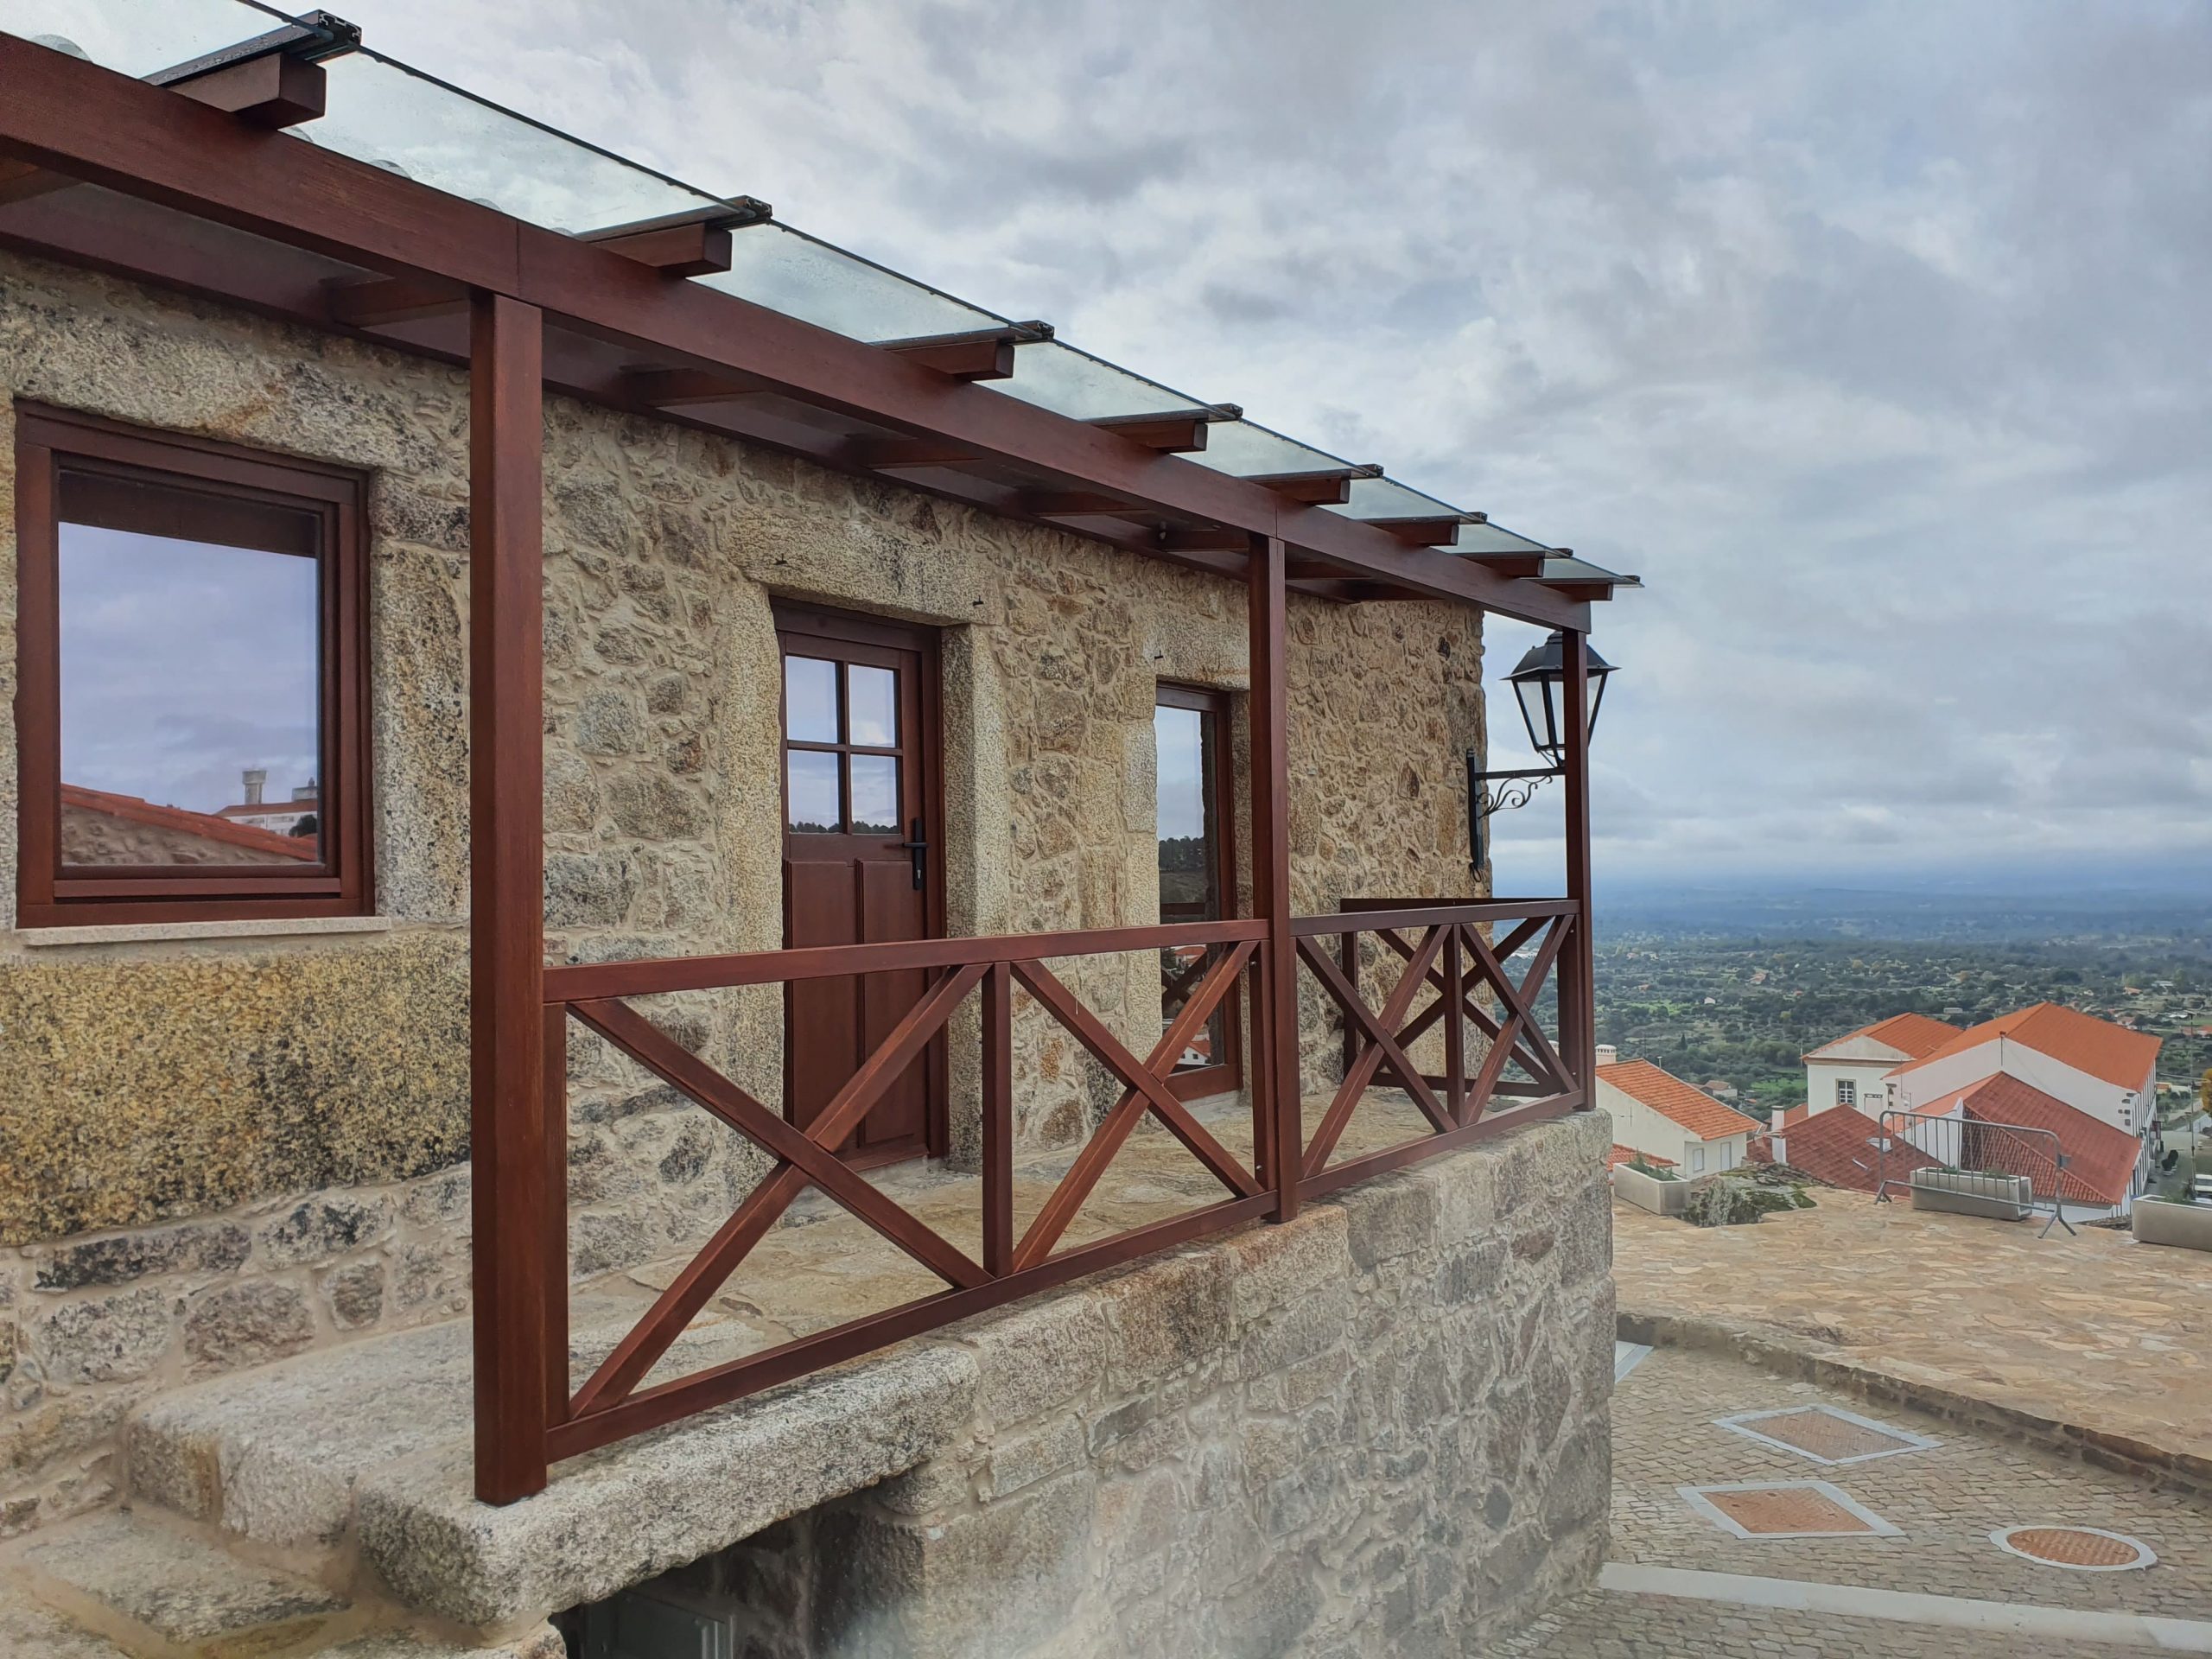 janelas madeira exótica ,maciça, Anúncios de "Outros" em Portugal